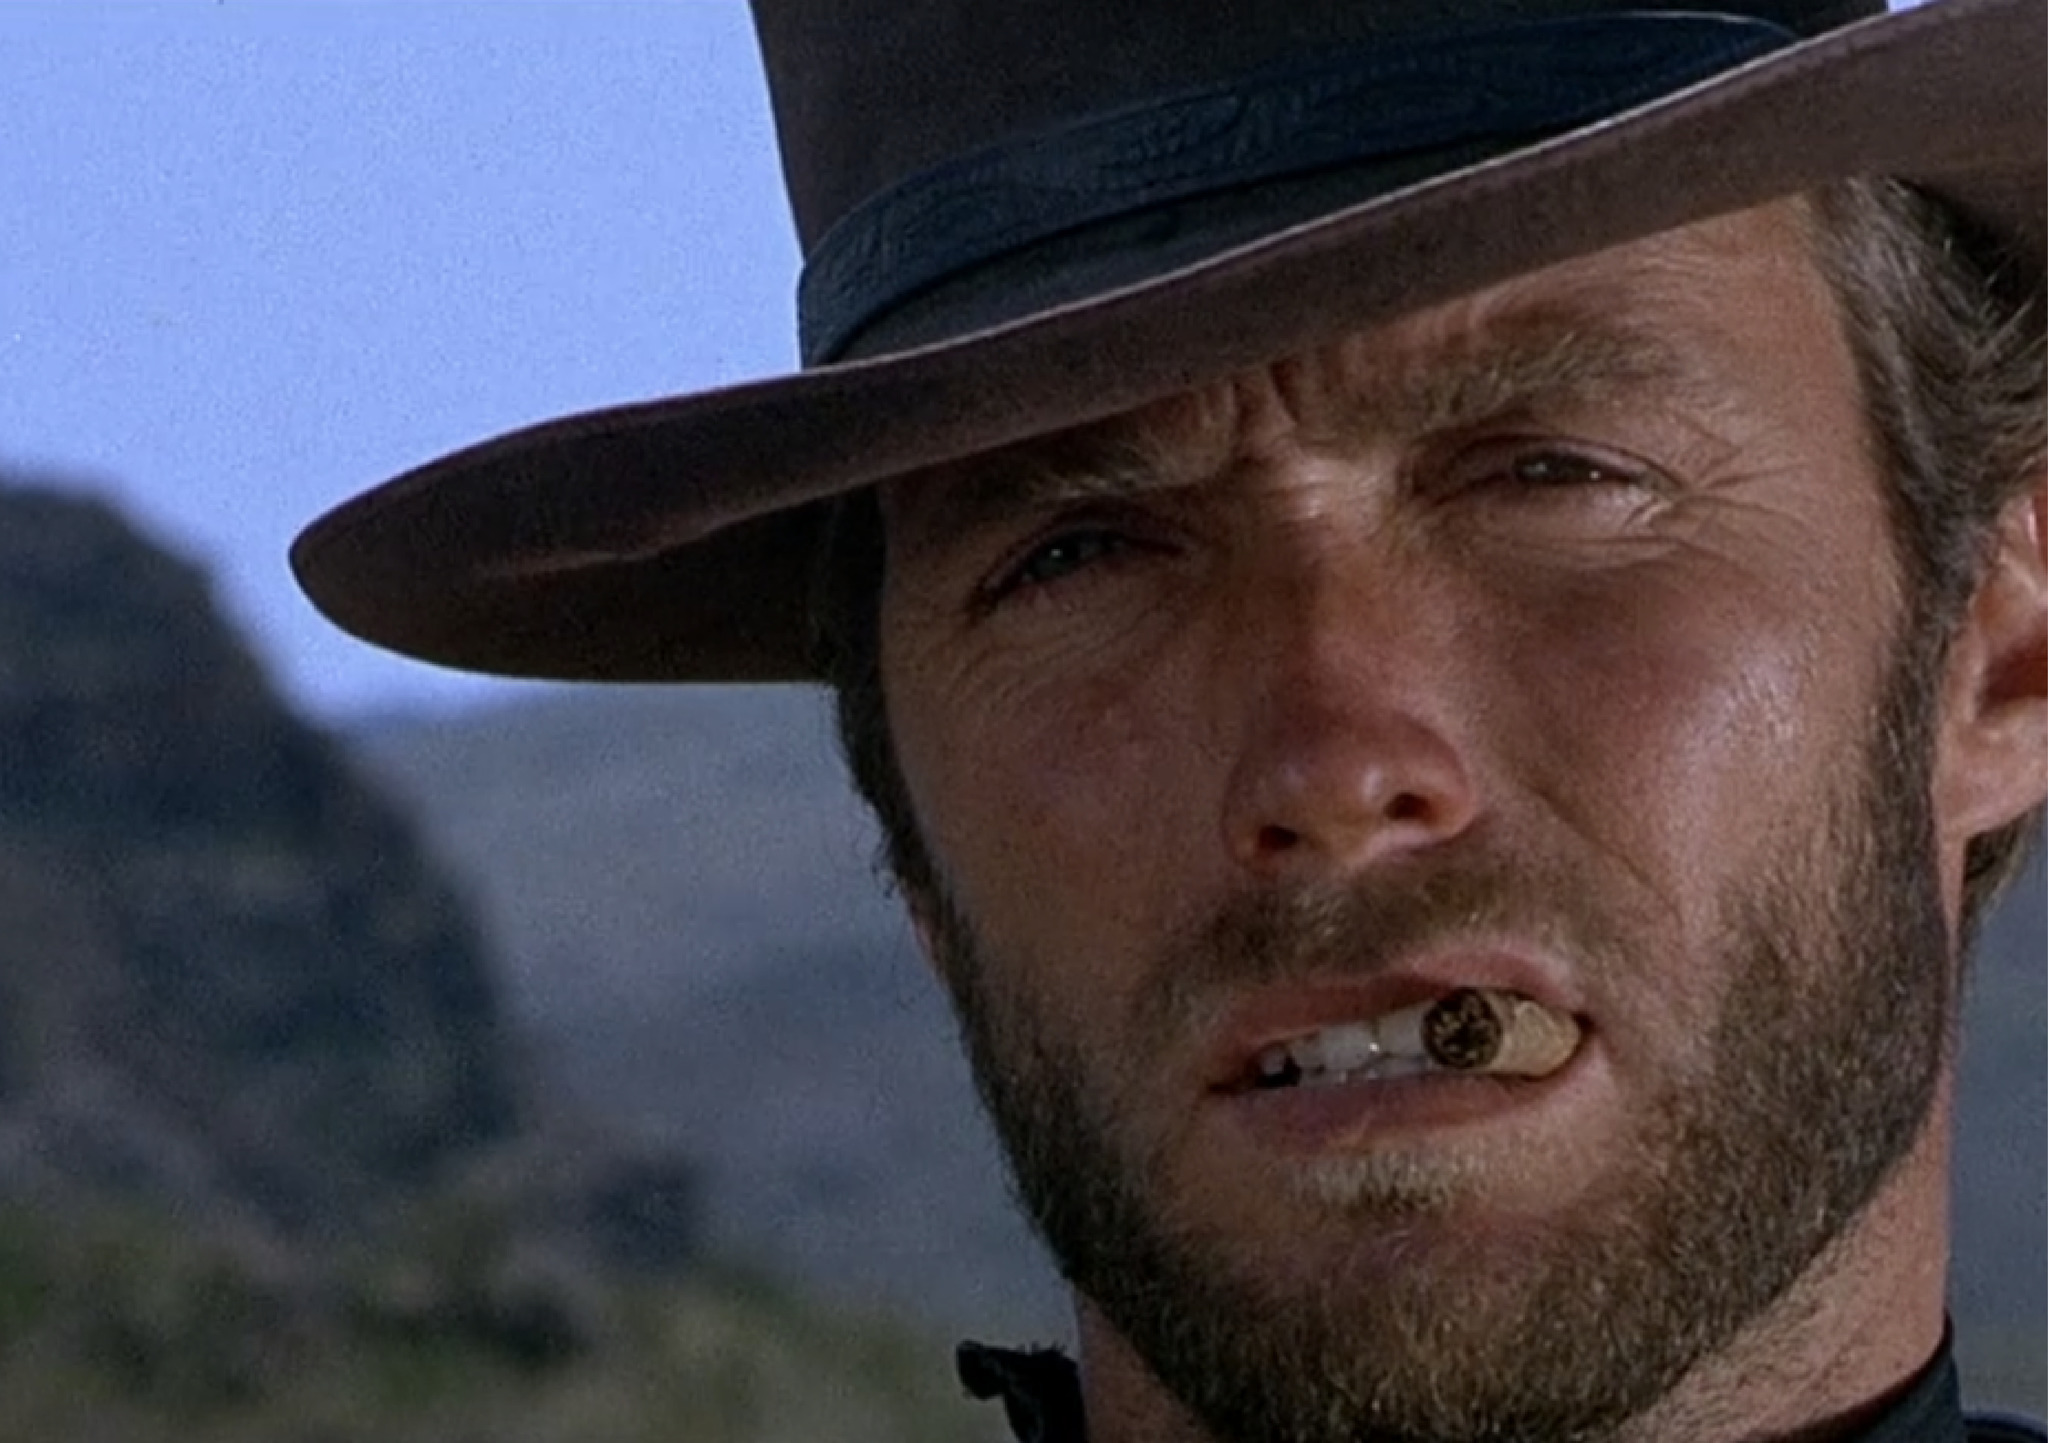 Глаза ковбоя. Клинт Иствуд ковбой. Клинт Иствуд хороший плохой злой. Клинт Иствуд блондинчик. Клинт Иствуд ковбой с сигарой.